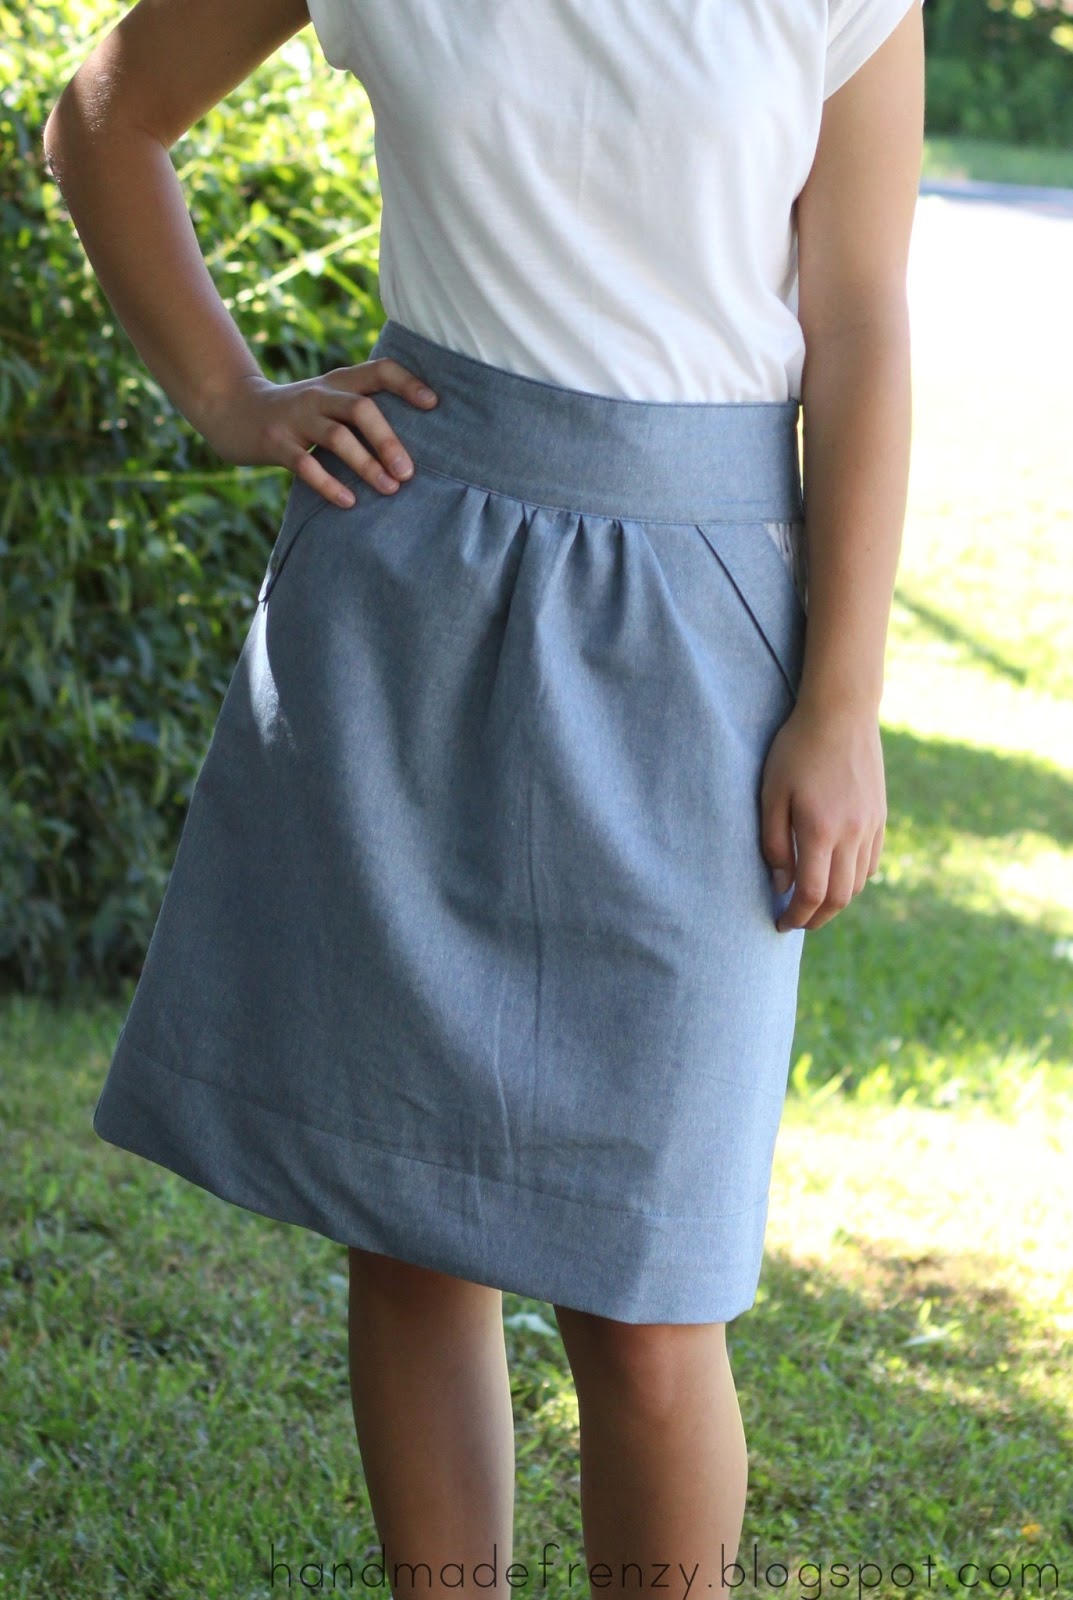 Anthropologie Inspired Skirt - DIY How-To / Handmade Frenzy